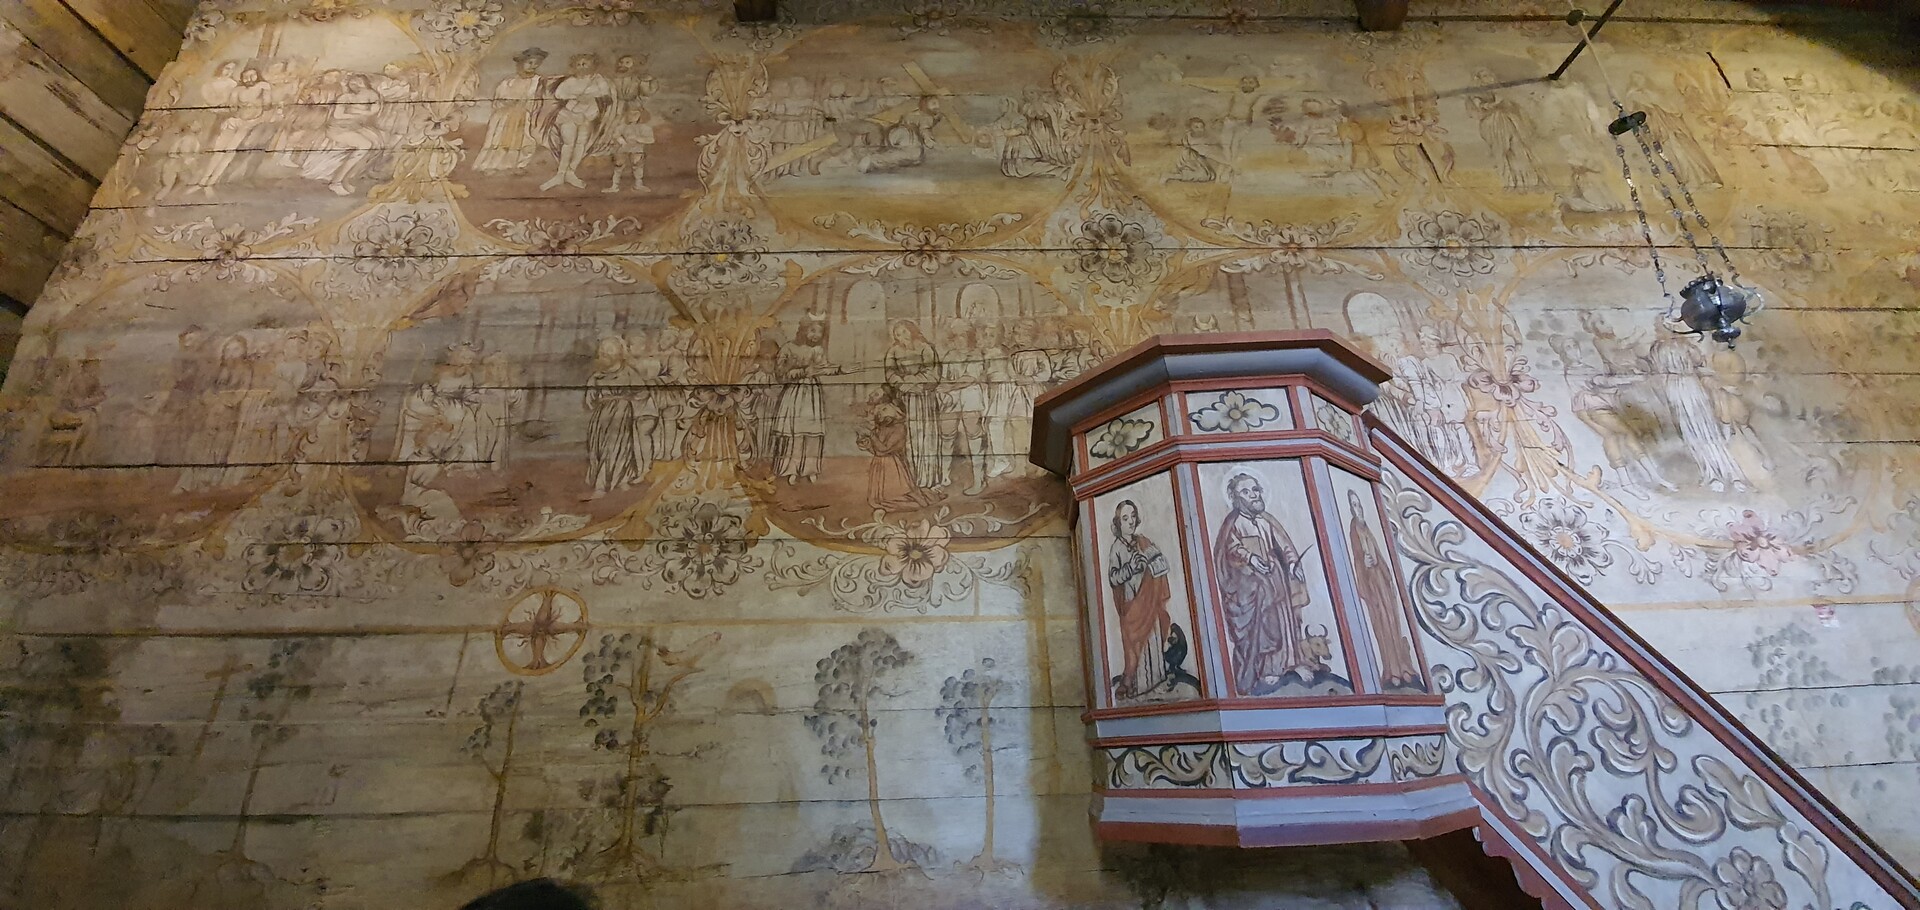 Wnętrze Kościoła św. Leonarda w Lipnicy Murowanej. Widok drewnianej ambony pokrytej malarską dekoracją.